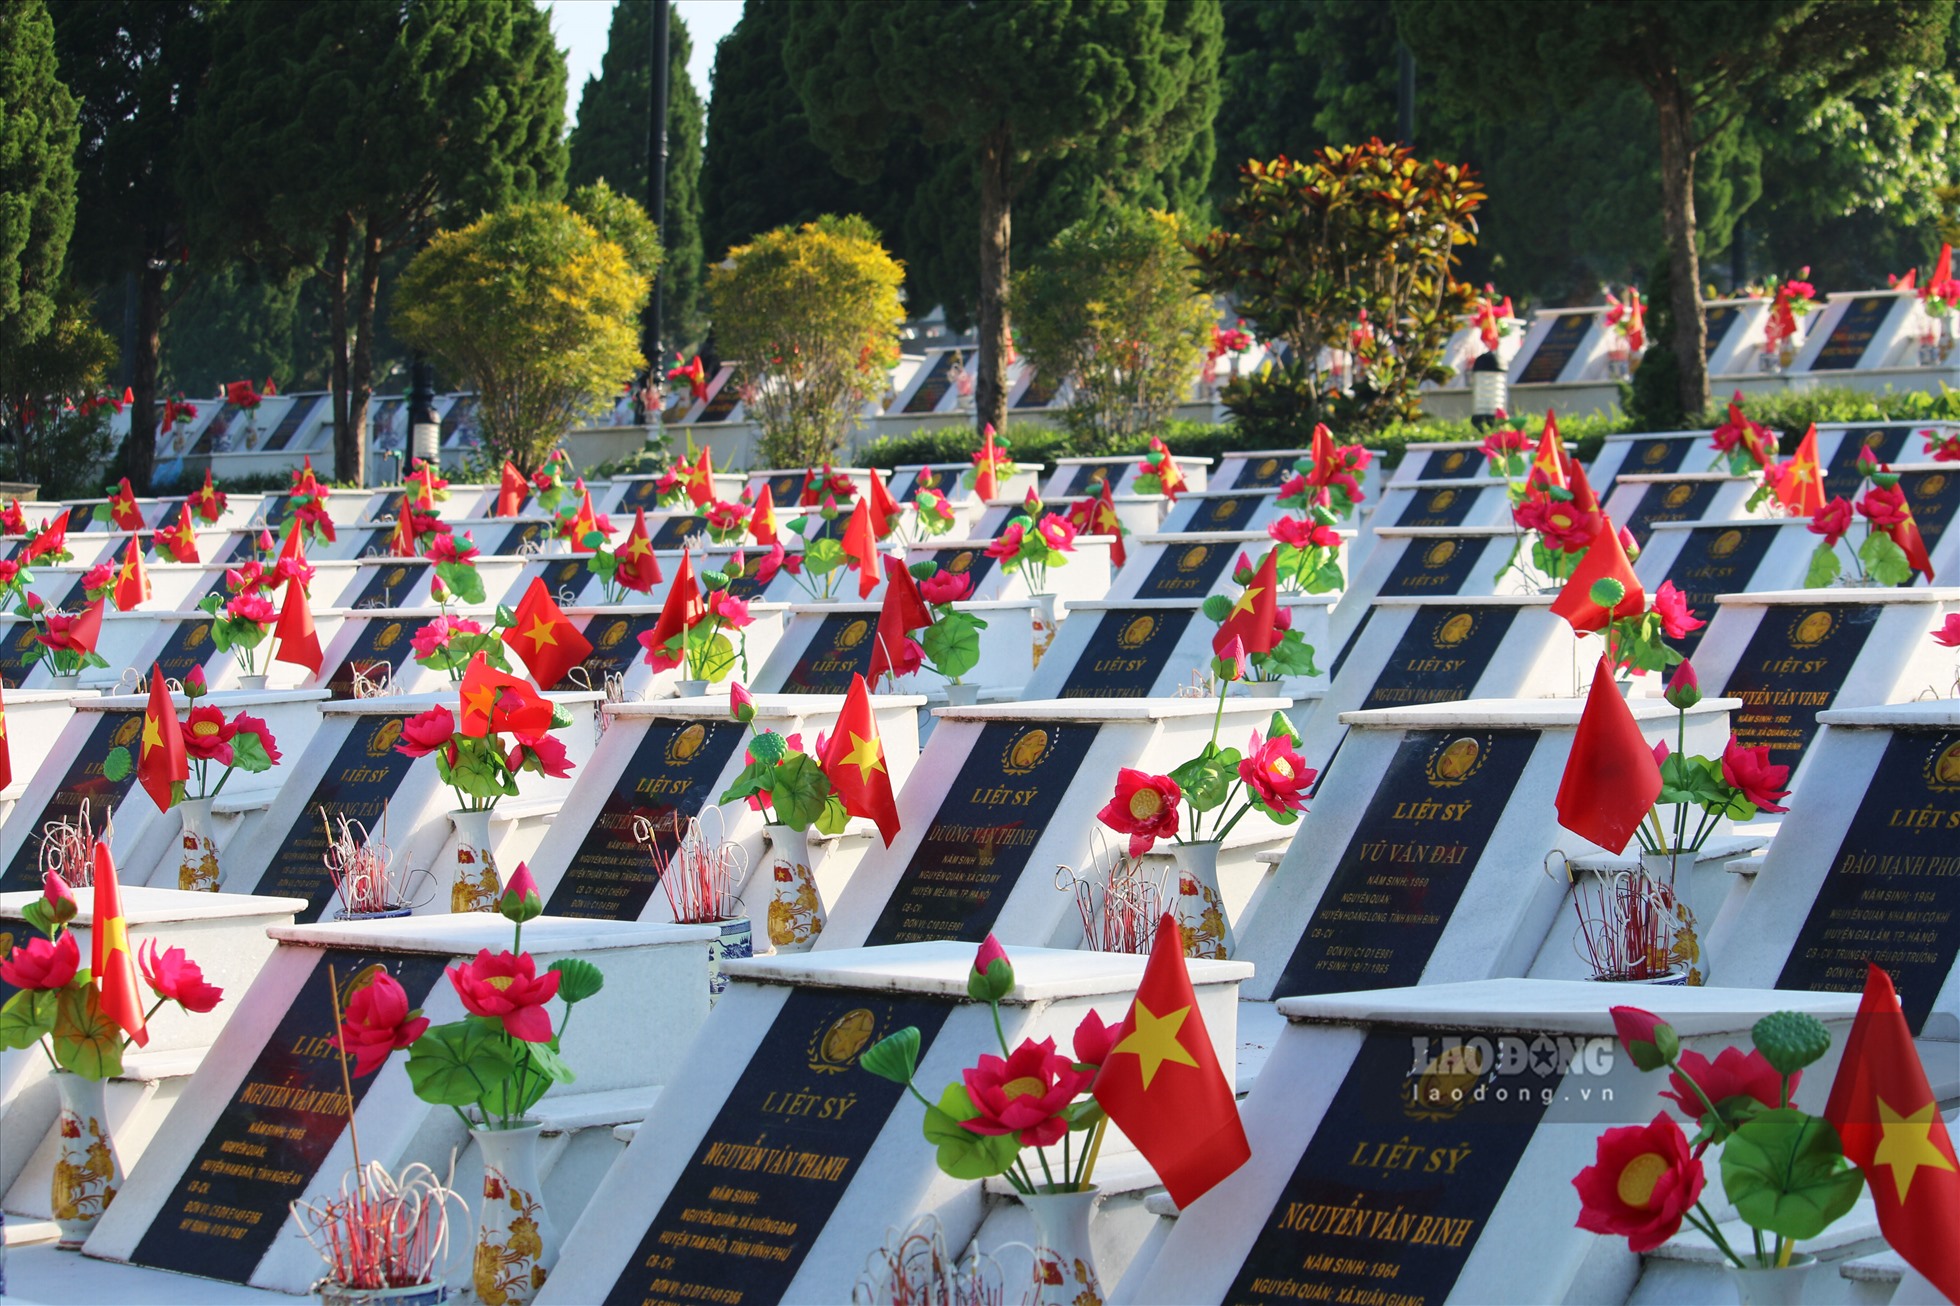 Các phần mộ Liệt sĩ đều được lát đá trang trọng, có hoa và cờ Tổ quốc cùng với hương khói quanh năm như khẳng định đồng bào, nhân dân cả nước không bao giờ quên sự hi sinh anh dũng để bảo vệ từng tấc đất Tổ quốc của các anh hùng, liệt sĩ.